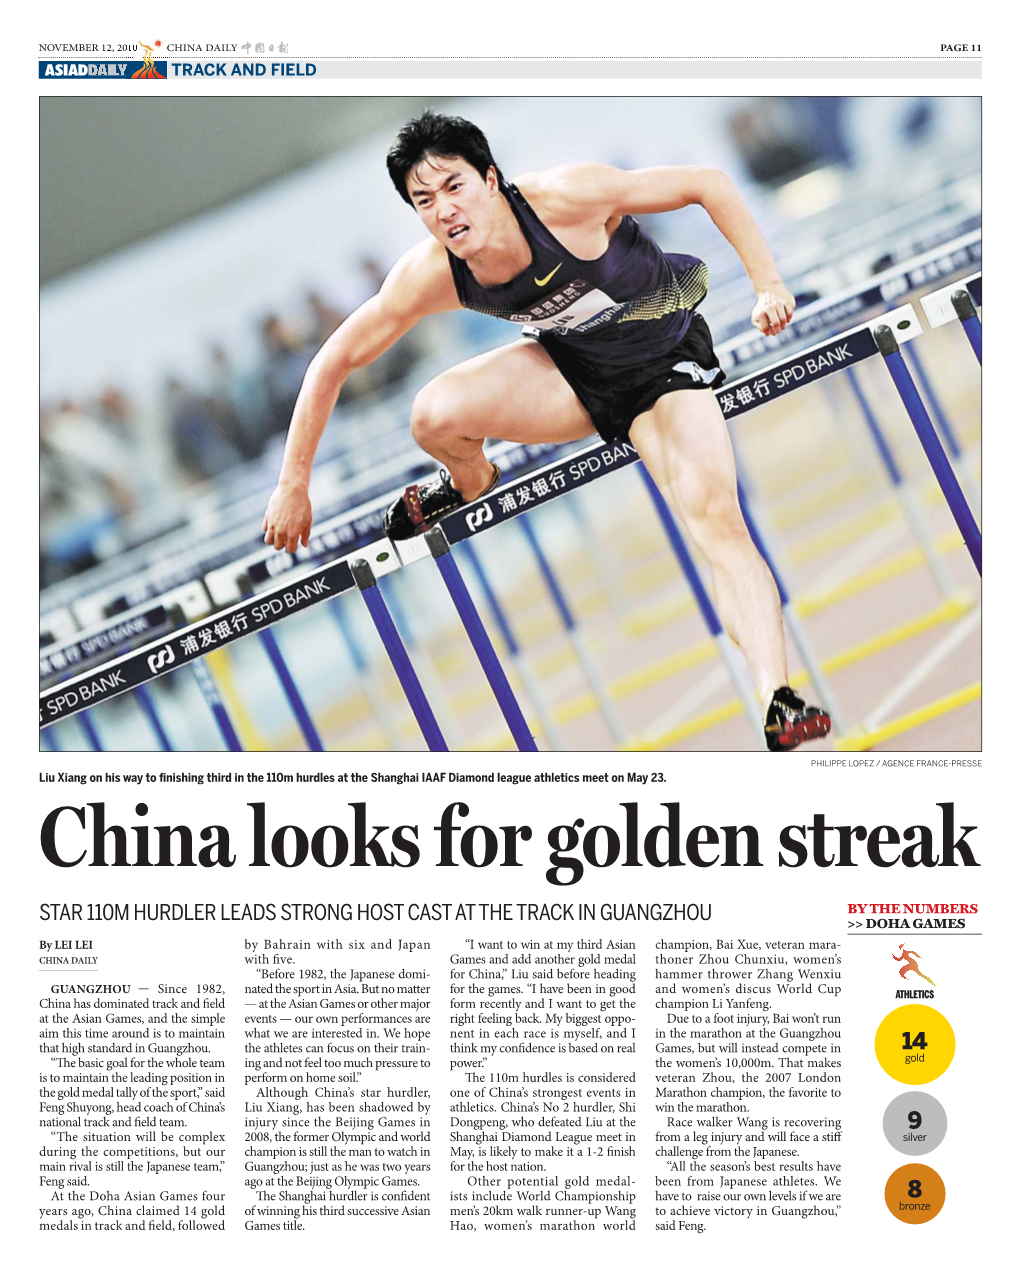 China Looks for Golden Streak